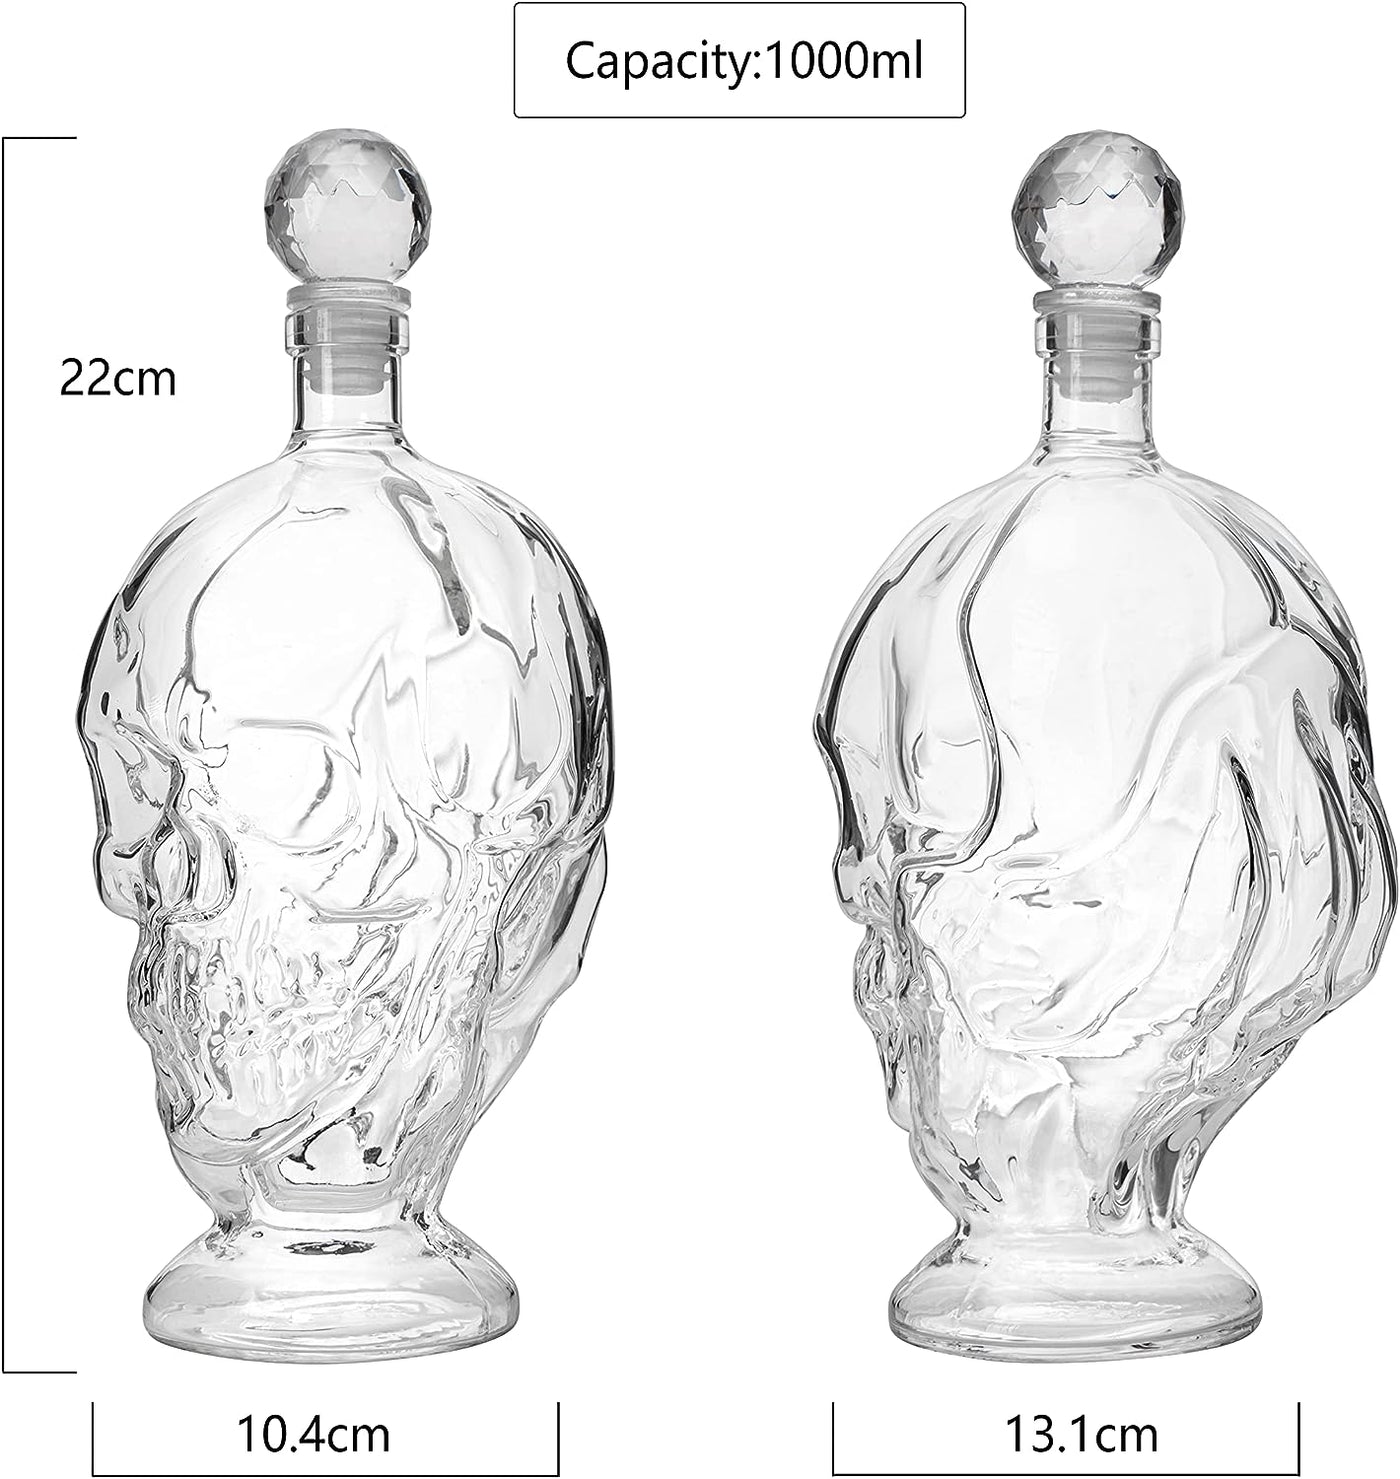 Skull Whiskey & Wine Decanter, 2 Faced Skull & Claw Decanter, Decor, Liquor Decanter Bottle - by Liquor Lux 1000ml, Skeleton Bottle - Great Gift for Any Bar